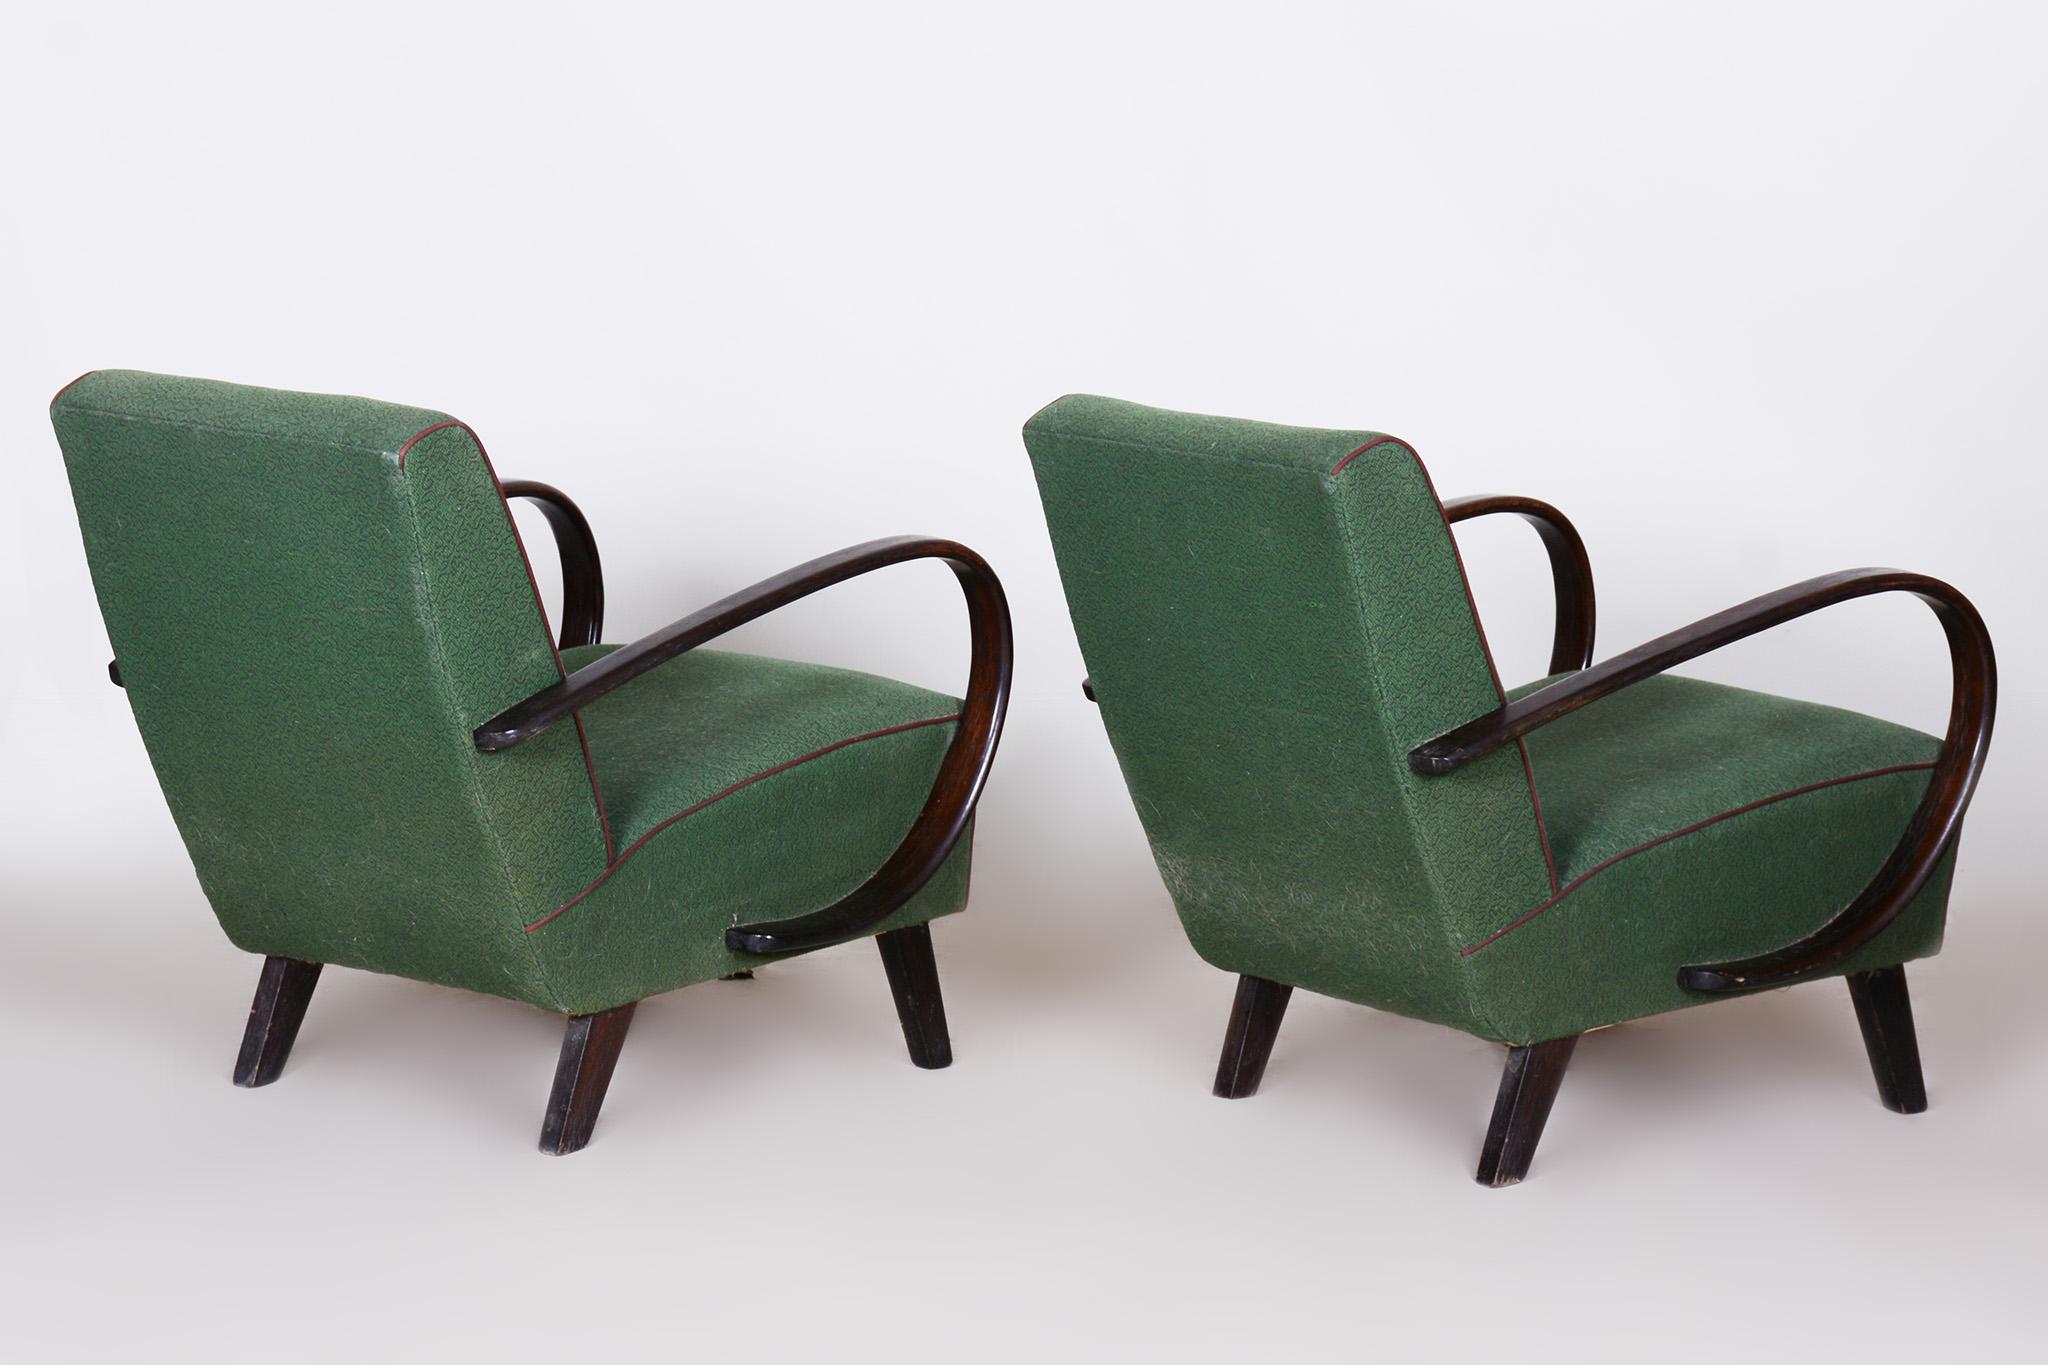 Paar grüne tschechische Art-Déco-Sessel aus Buche, Jindrich Halabala, UP Zavody, 1930er Jahre (Stoff)